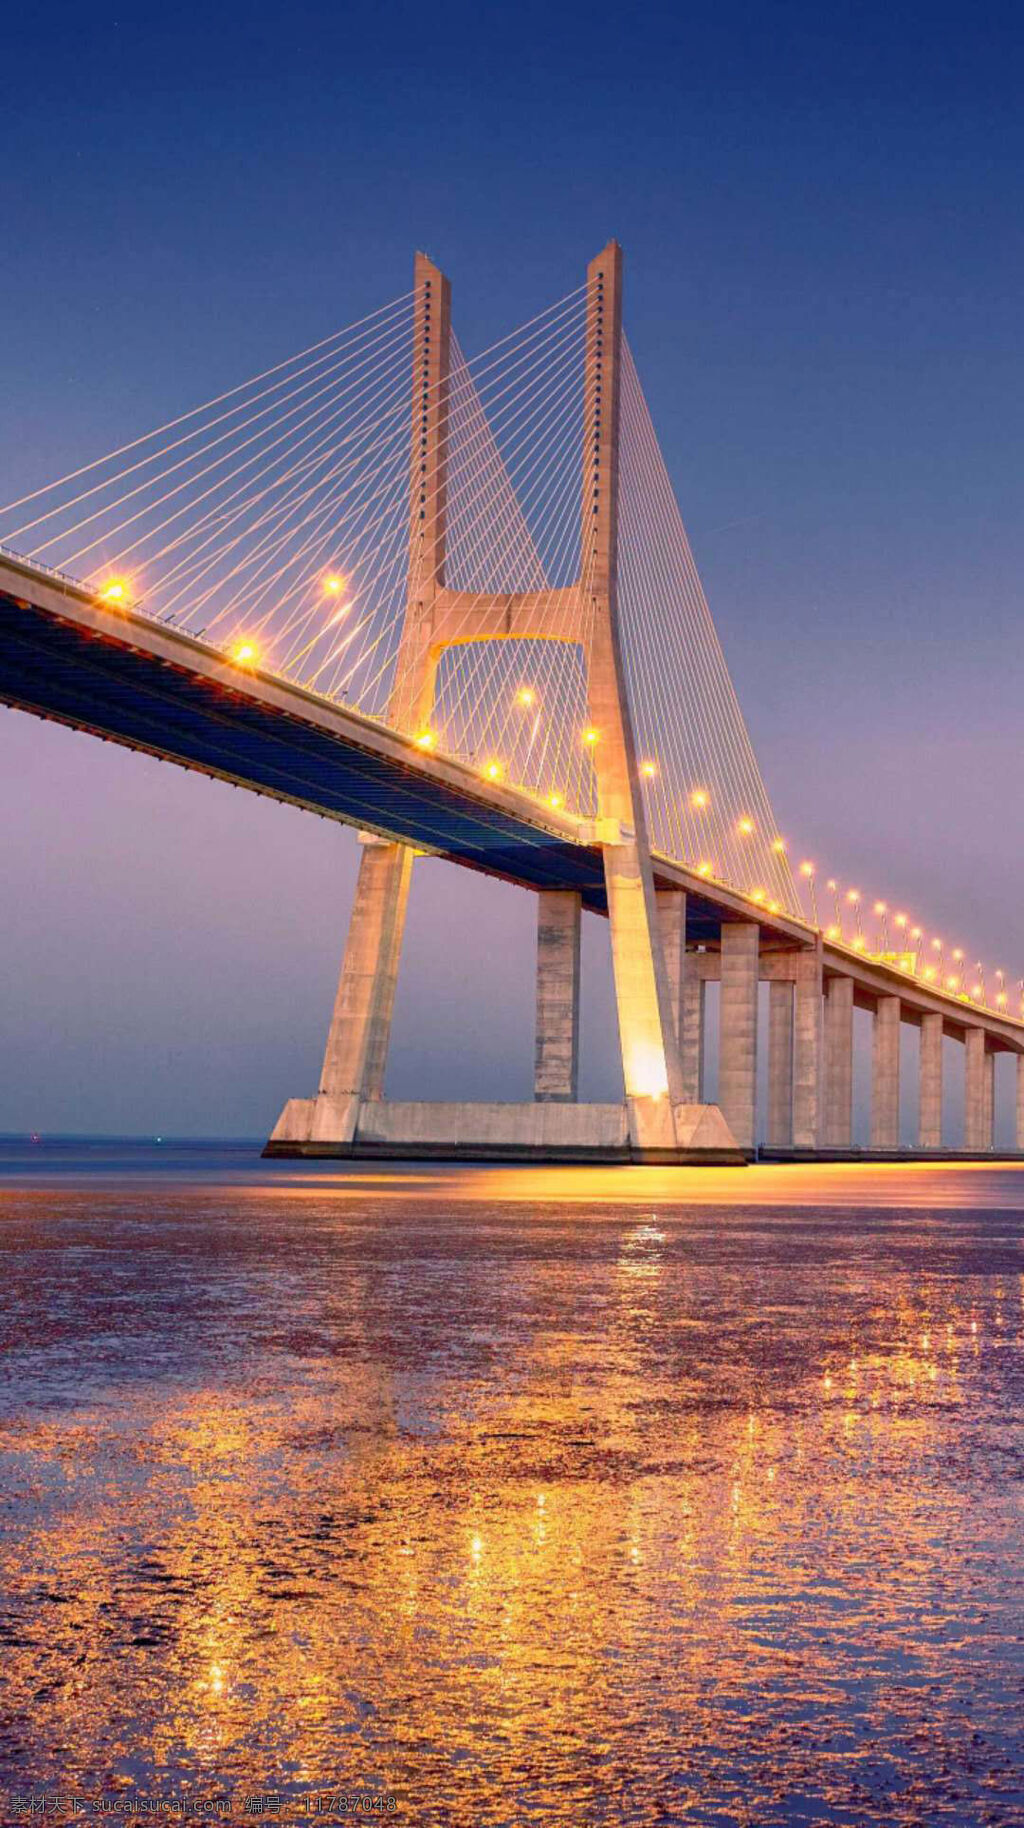 美丽 大桥 夜景 灯光璀璨 壮观的大桥 精美的大桥 坚固的大桥 蔚蓝的天空 宽阔的海面 平坦的海面 自然景观 建筑景观